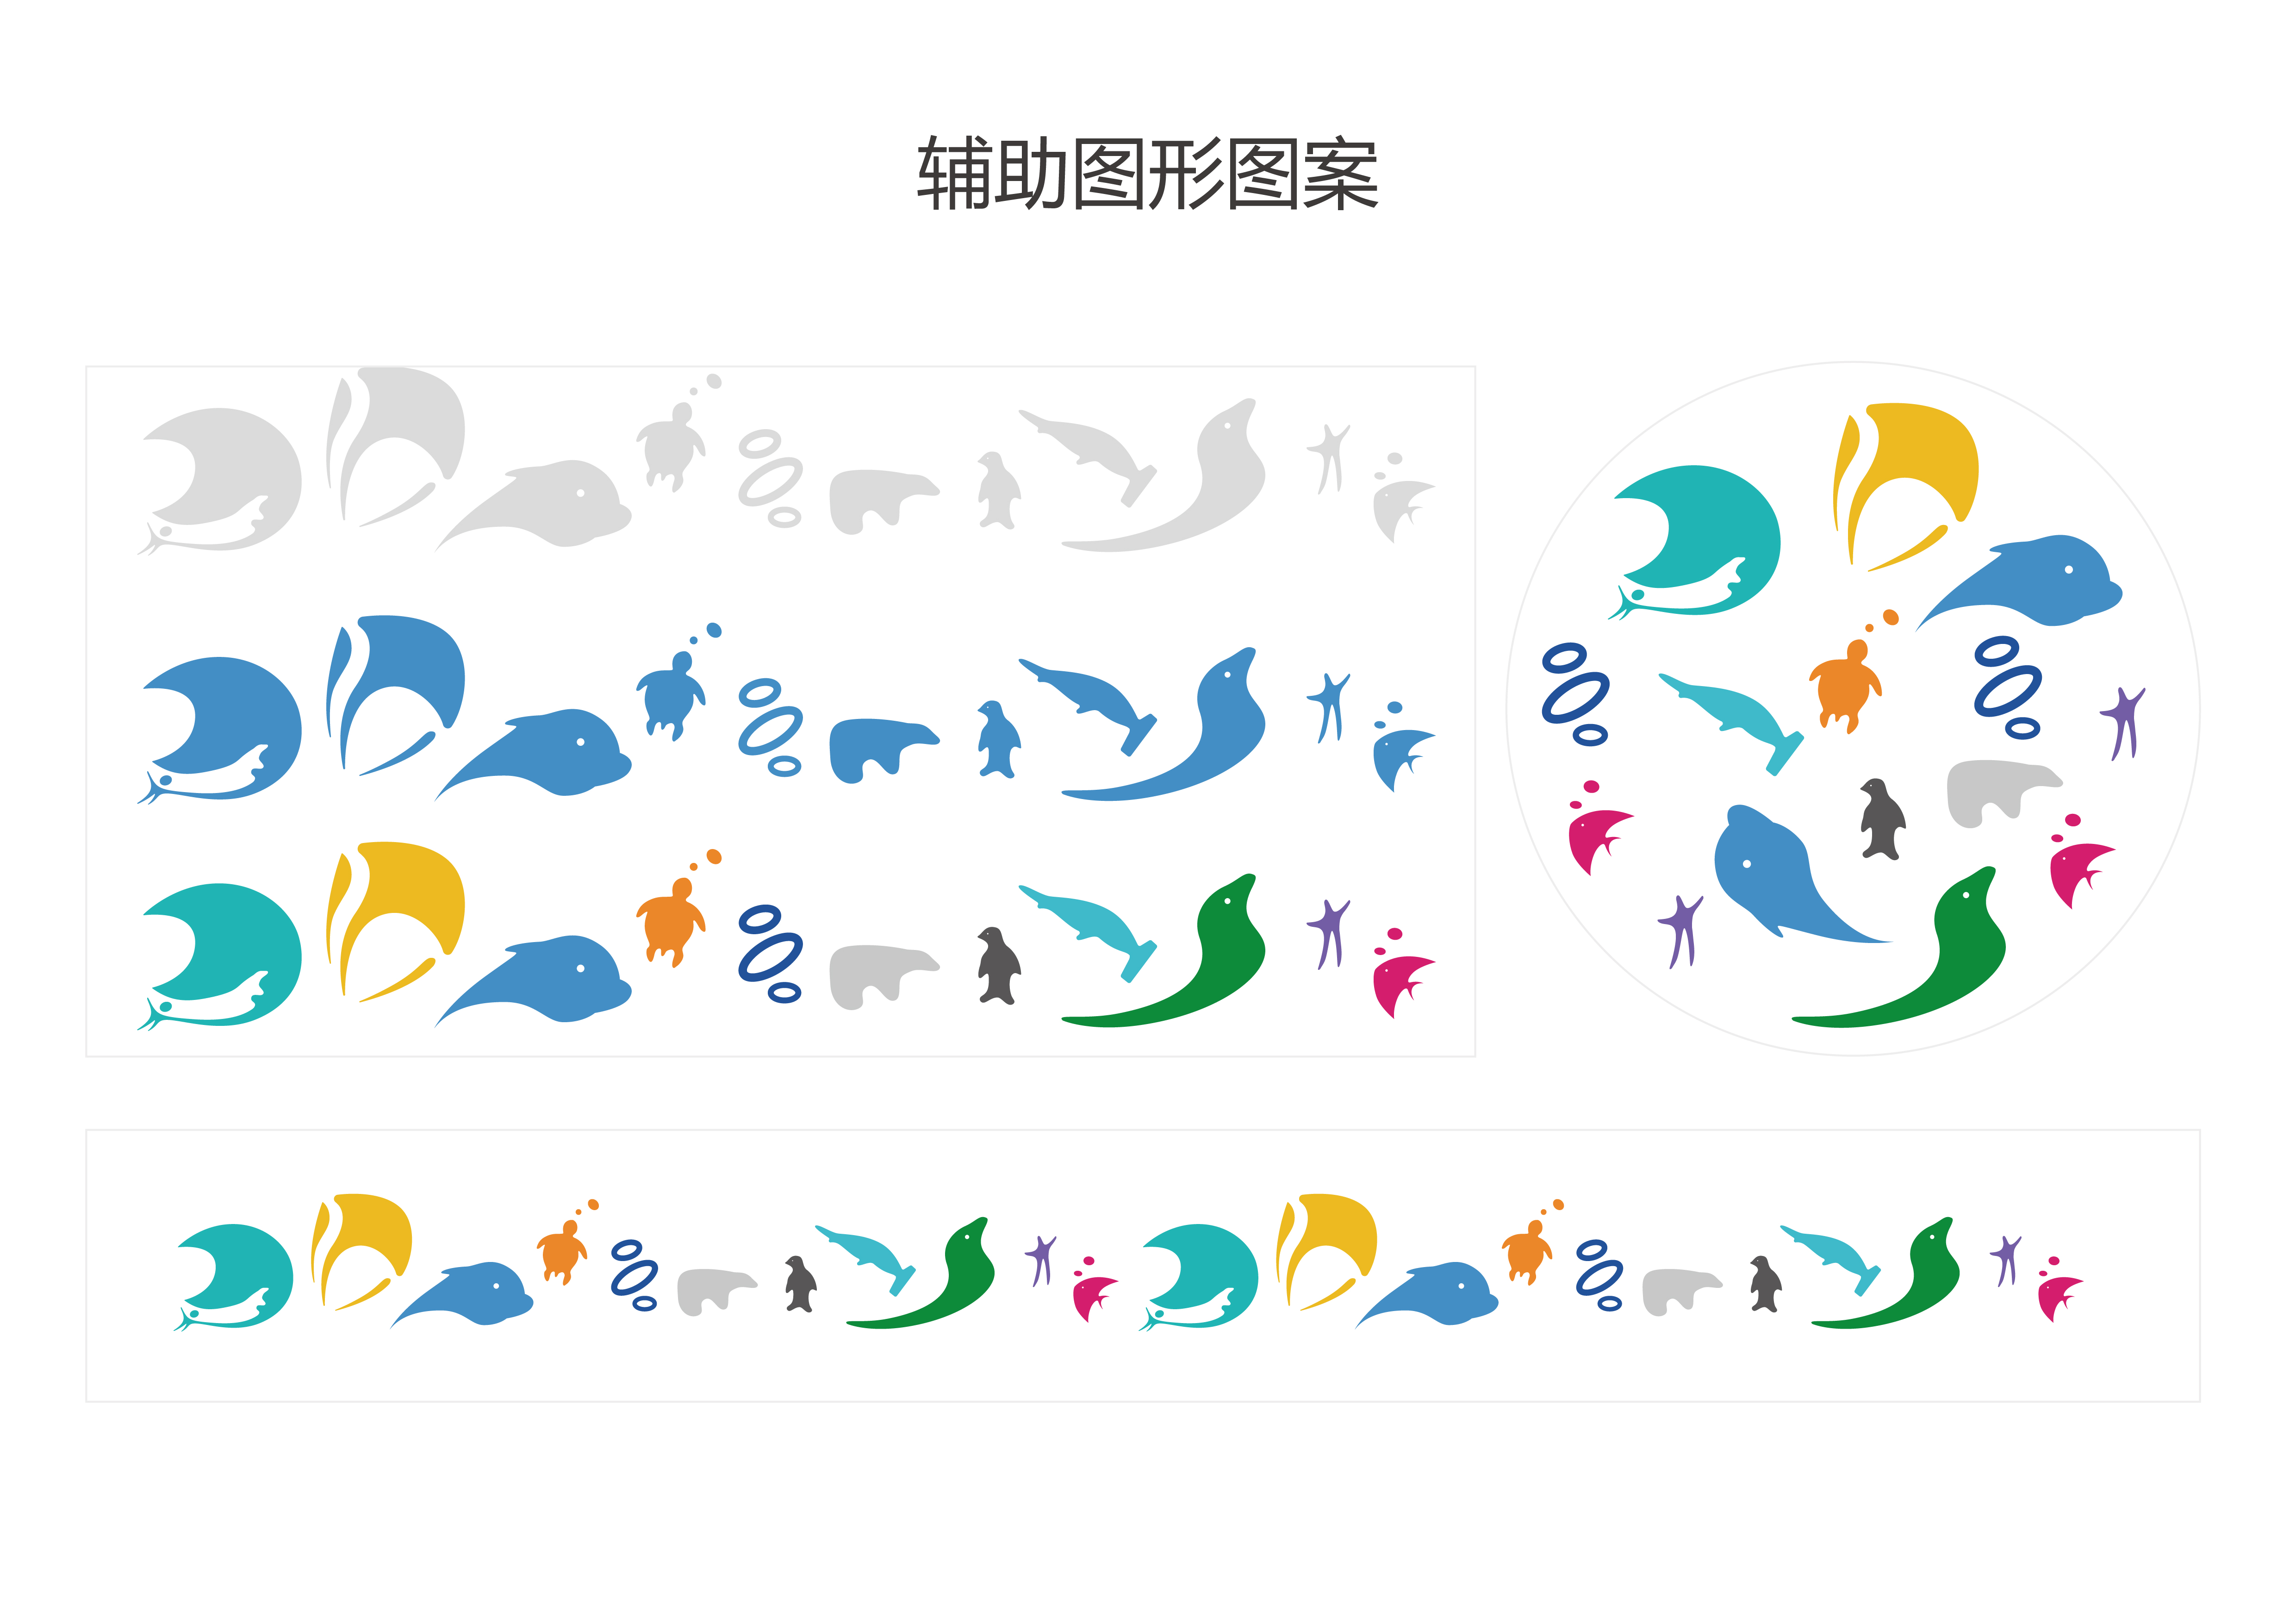 上海海昌海洋公园 30万征集魔都新地标logo设计 邹秉成